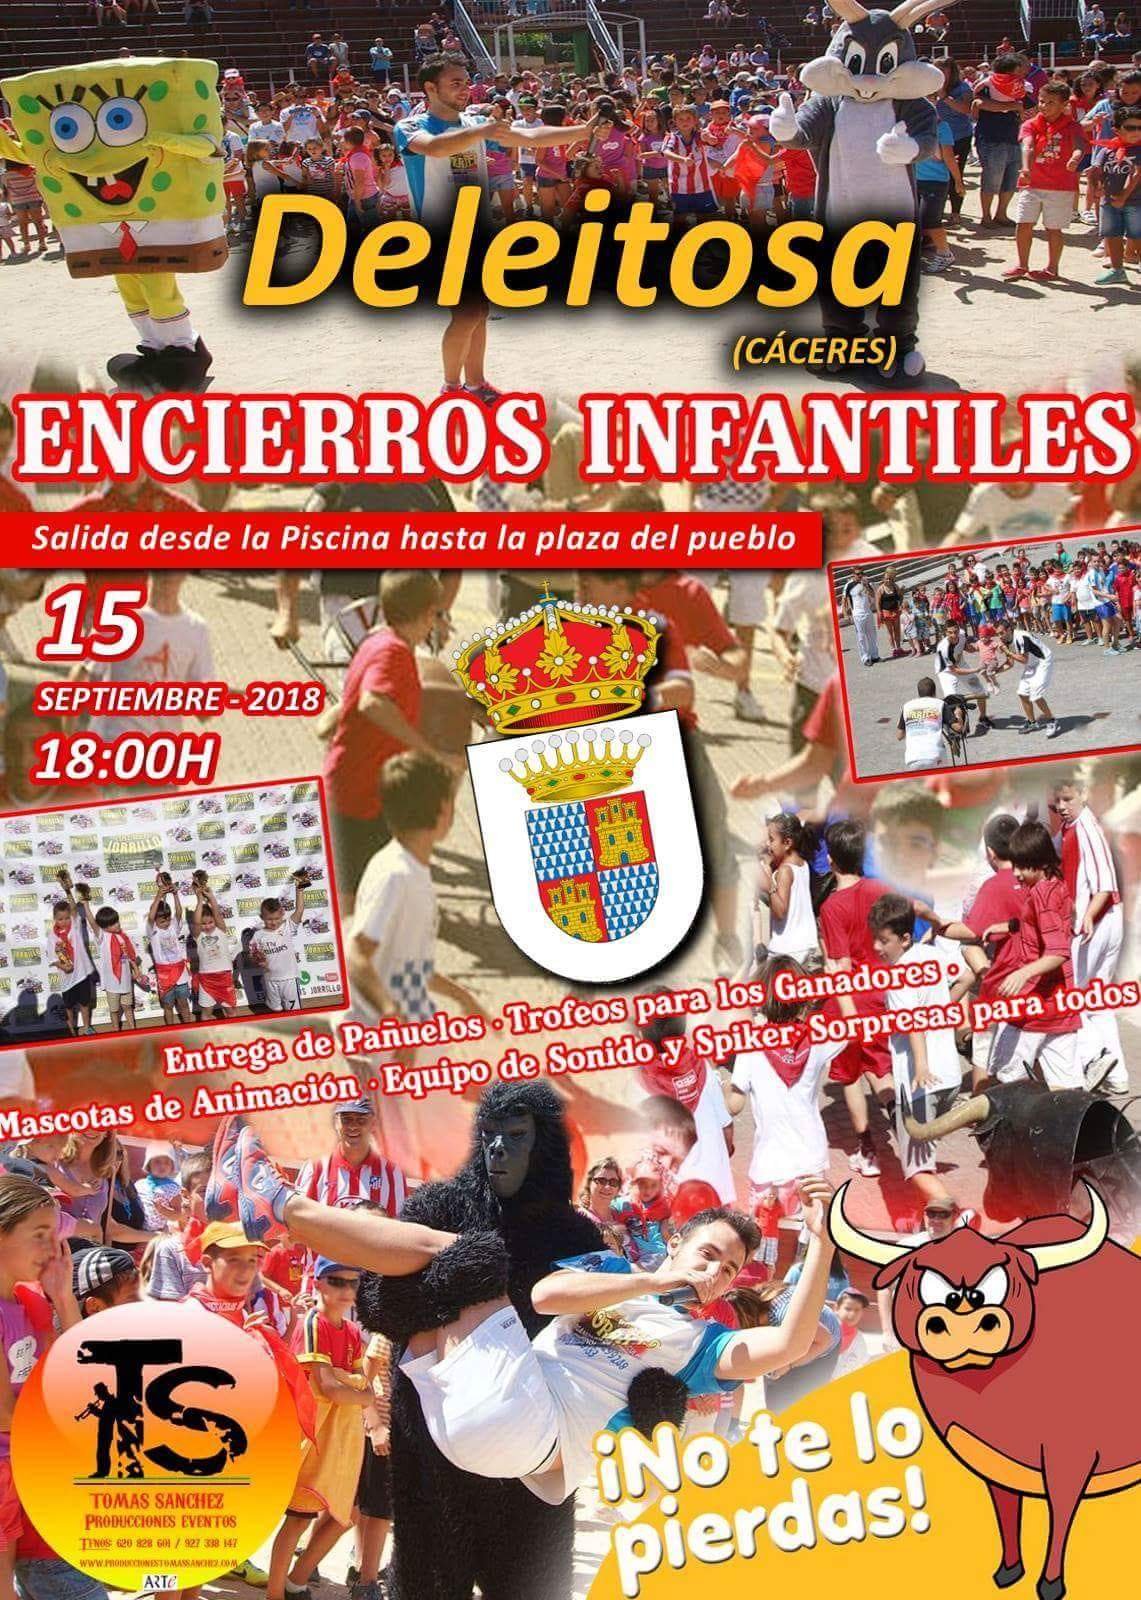 Encierros infantiles 2018 - Deleitosa (Cáceres)